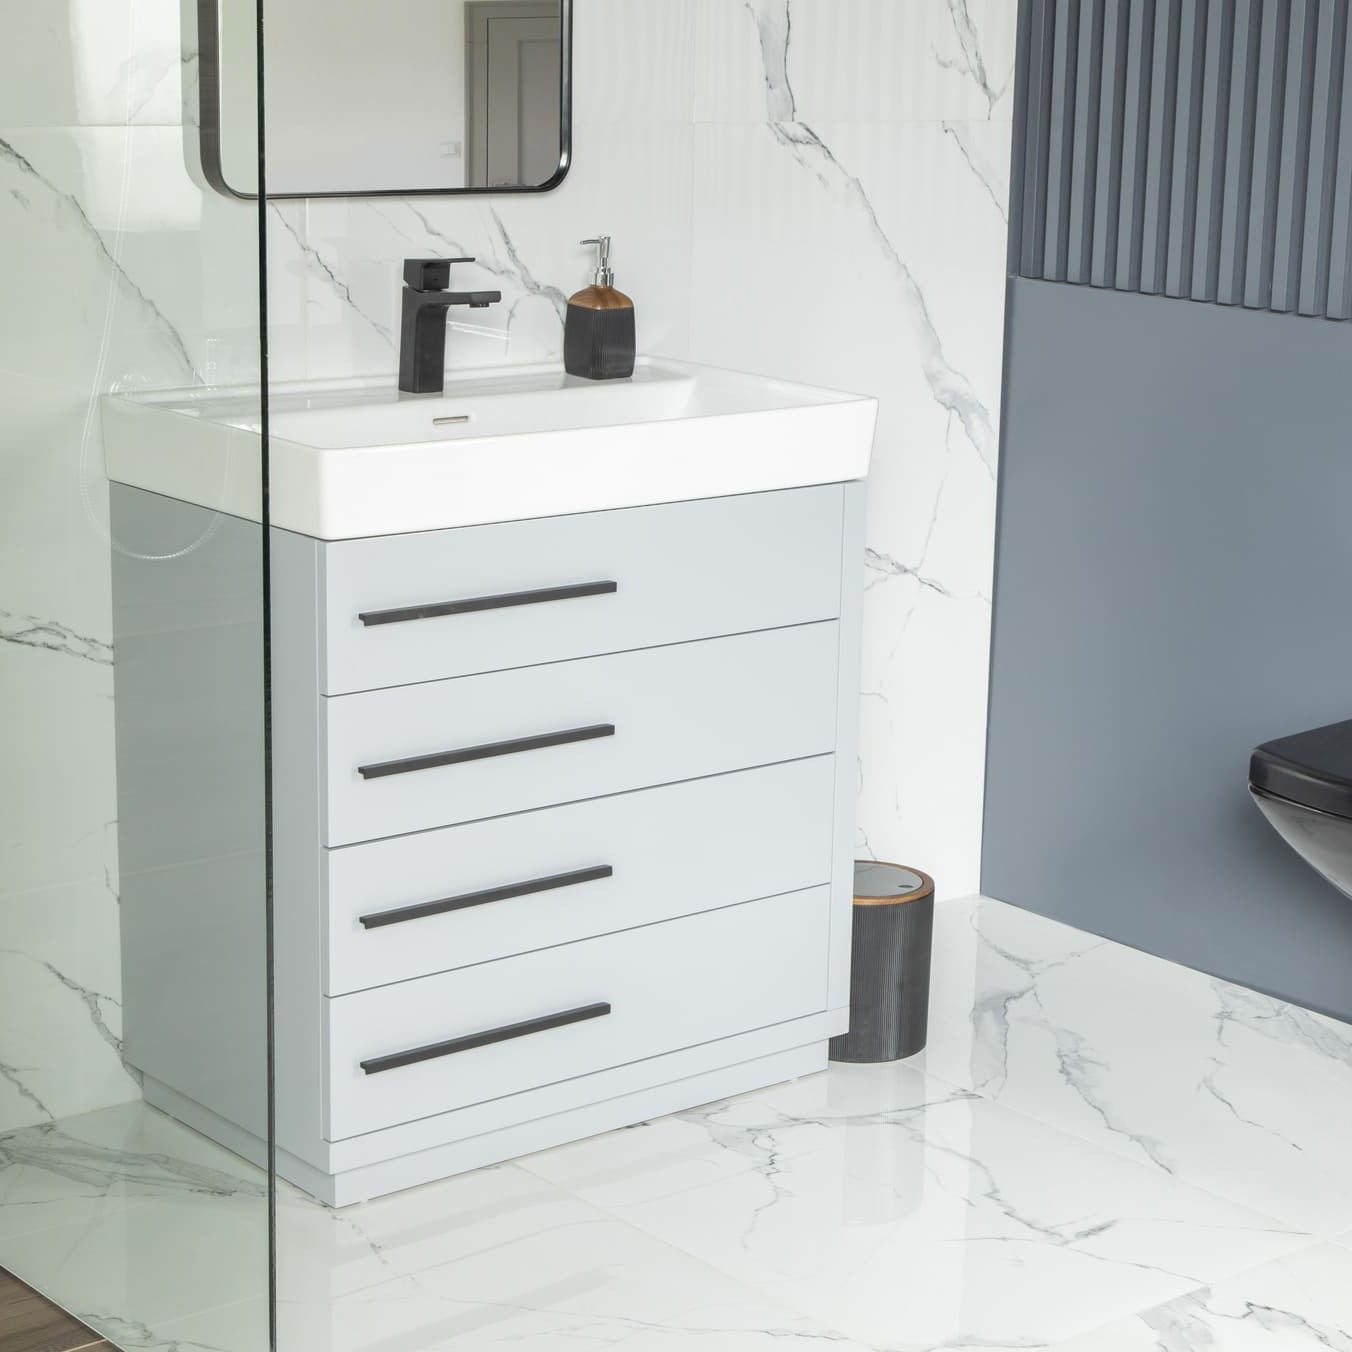 Adora Bathroom Vanity Homelero 32" #size_32" #color_light grey